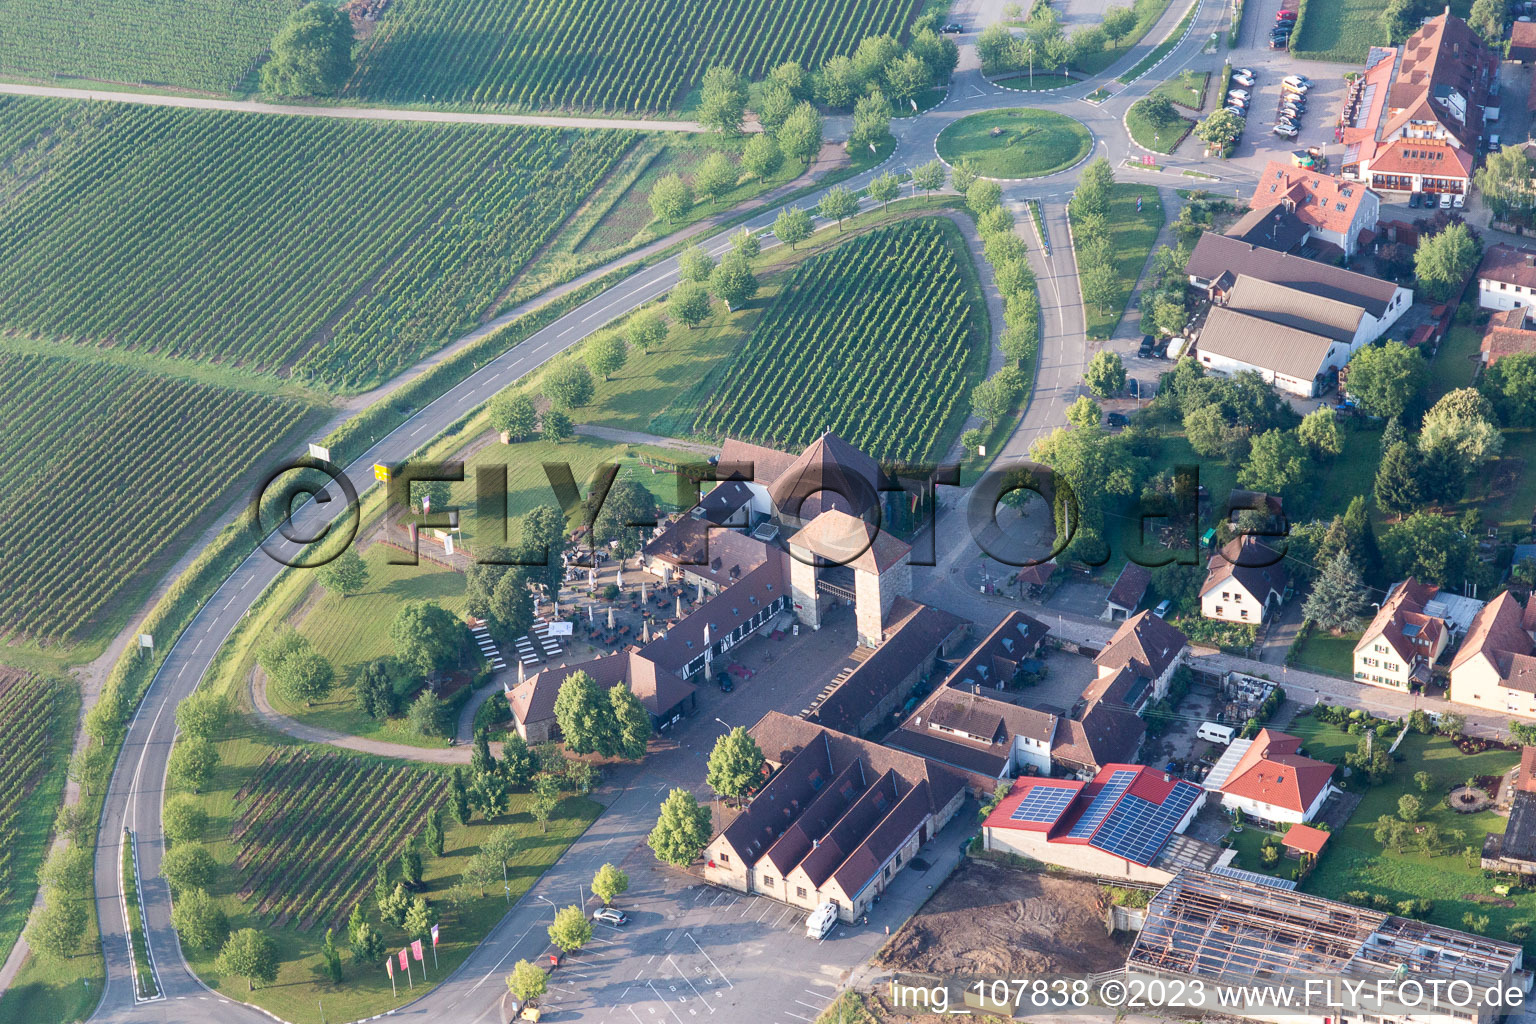 Aerial view of District Rechtenbach in Schweigen-Rechtenbach in the state Rhineland-Palatinate, Germany